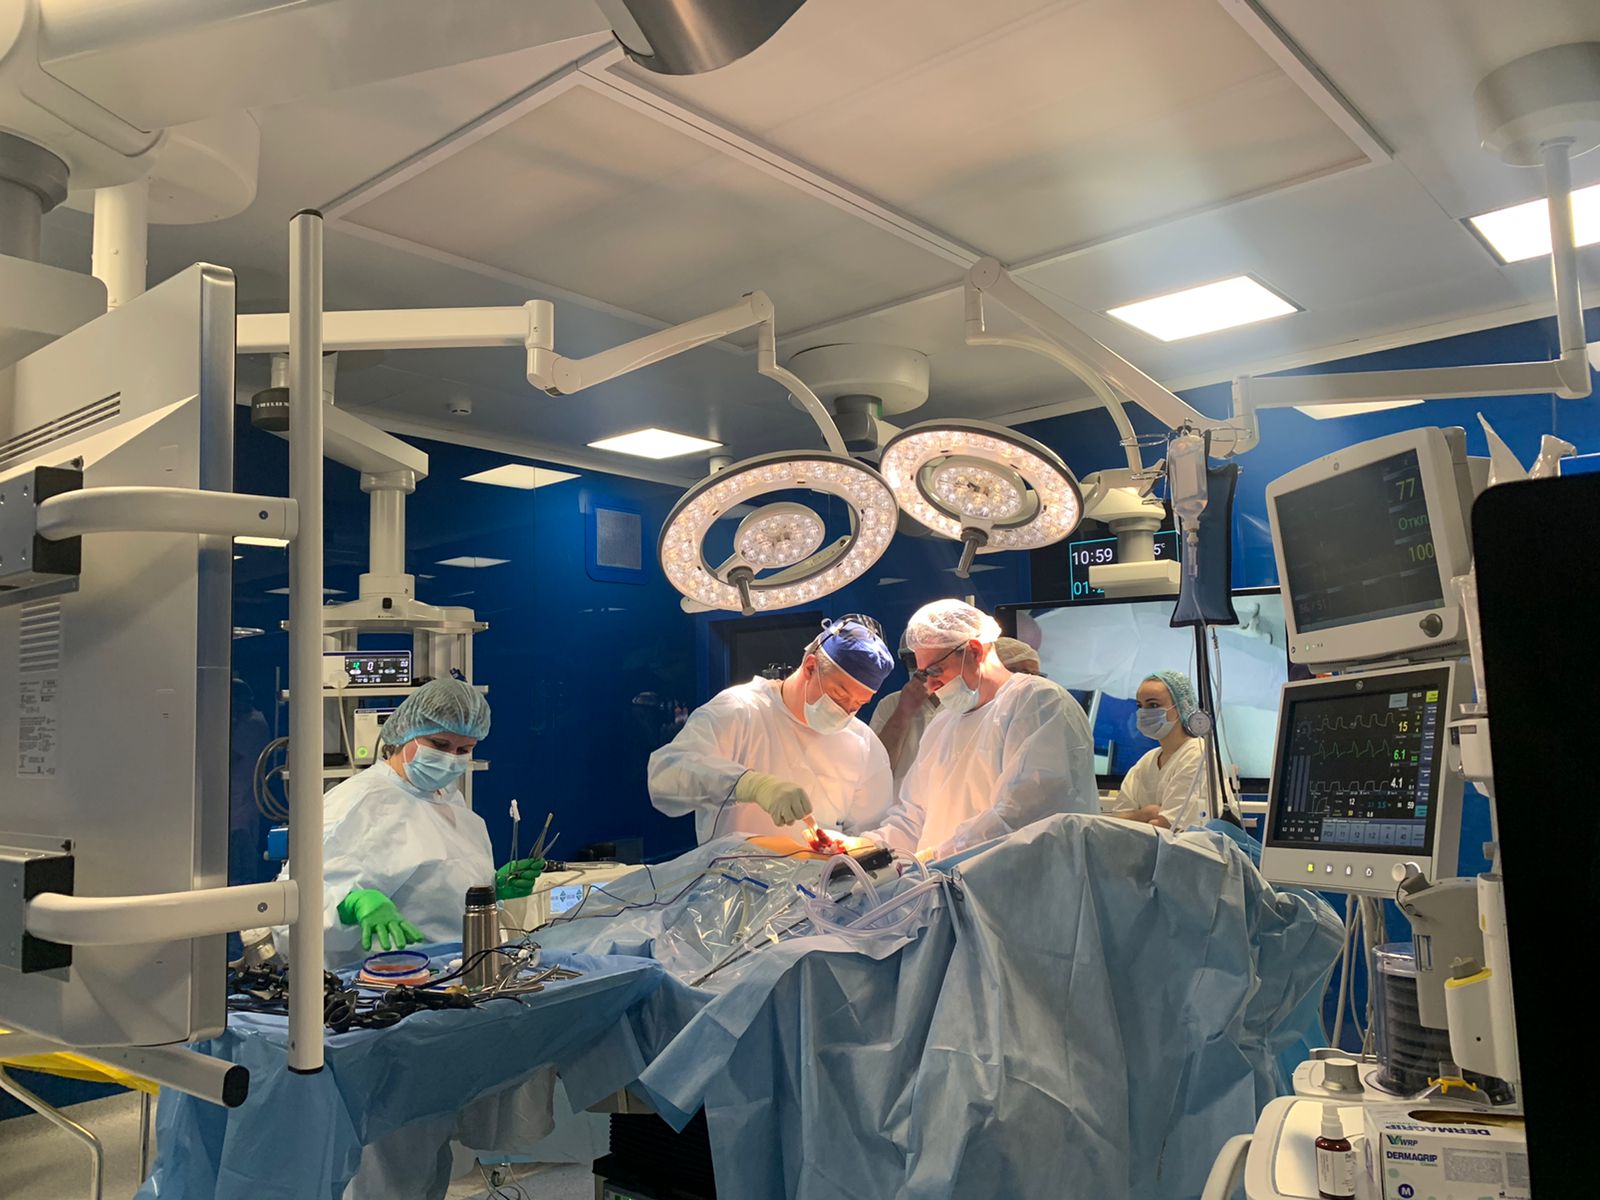 Первая родственная трансплантация почки в интегрированных операционных MVS в КБ Св. Луки